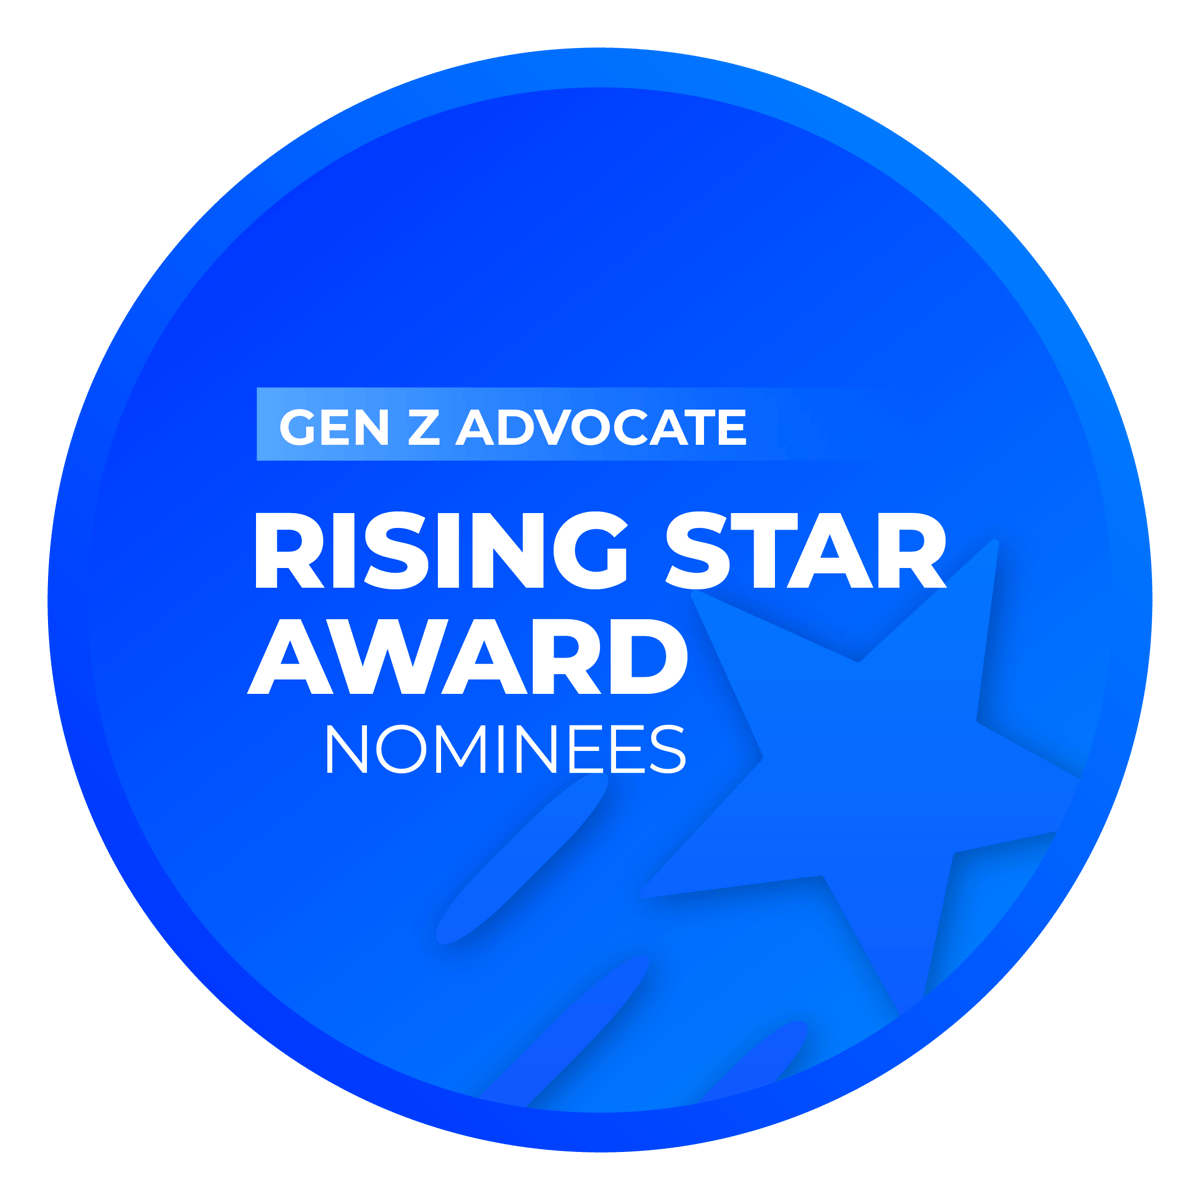 Rising Star Award: Gen Z Advocate Nominees